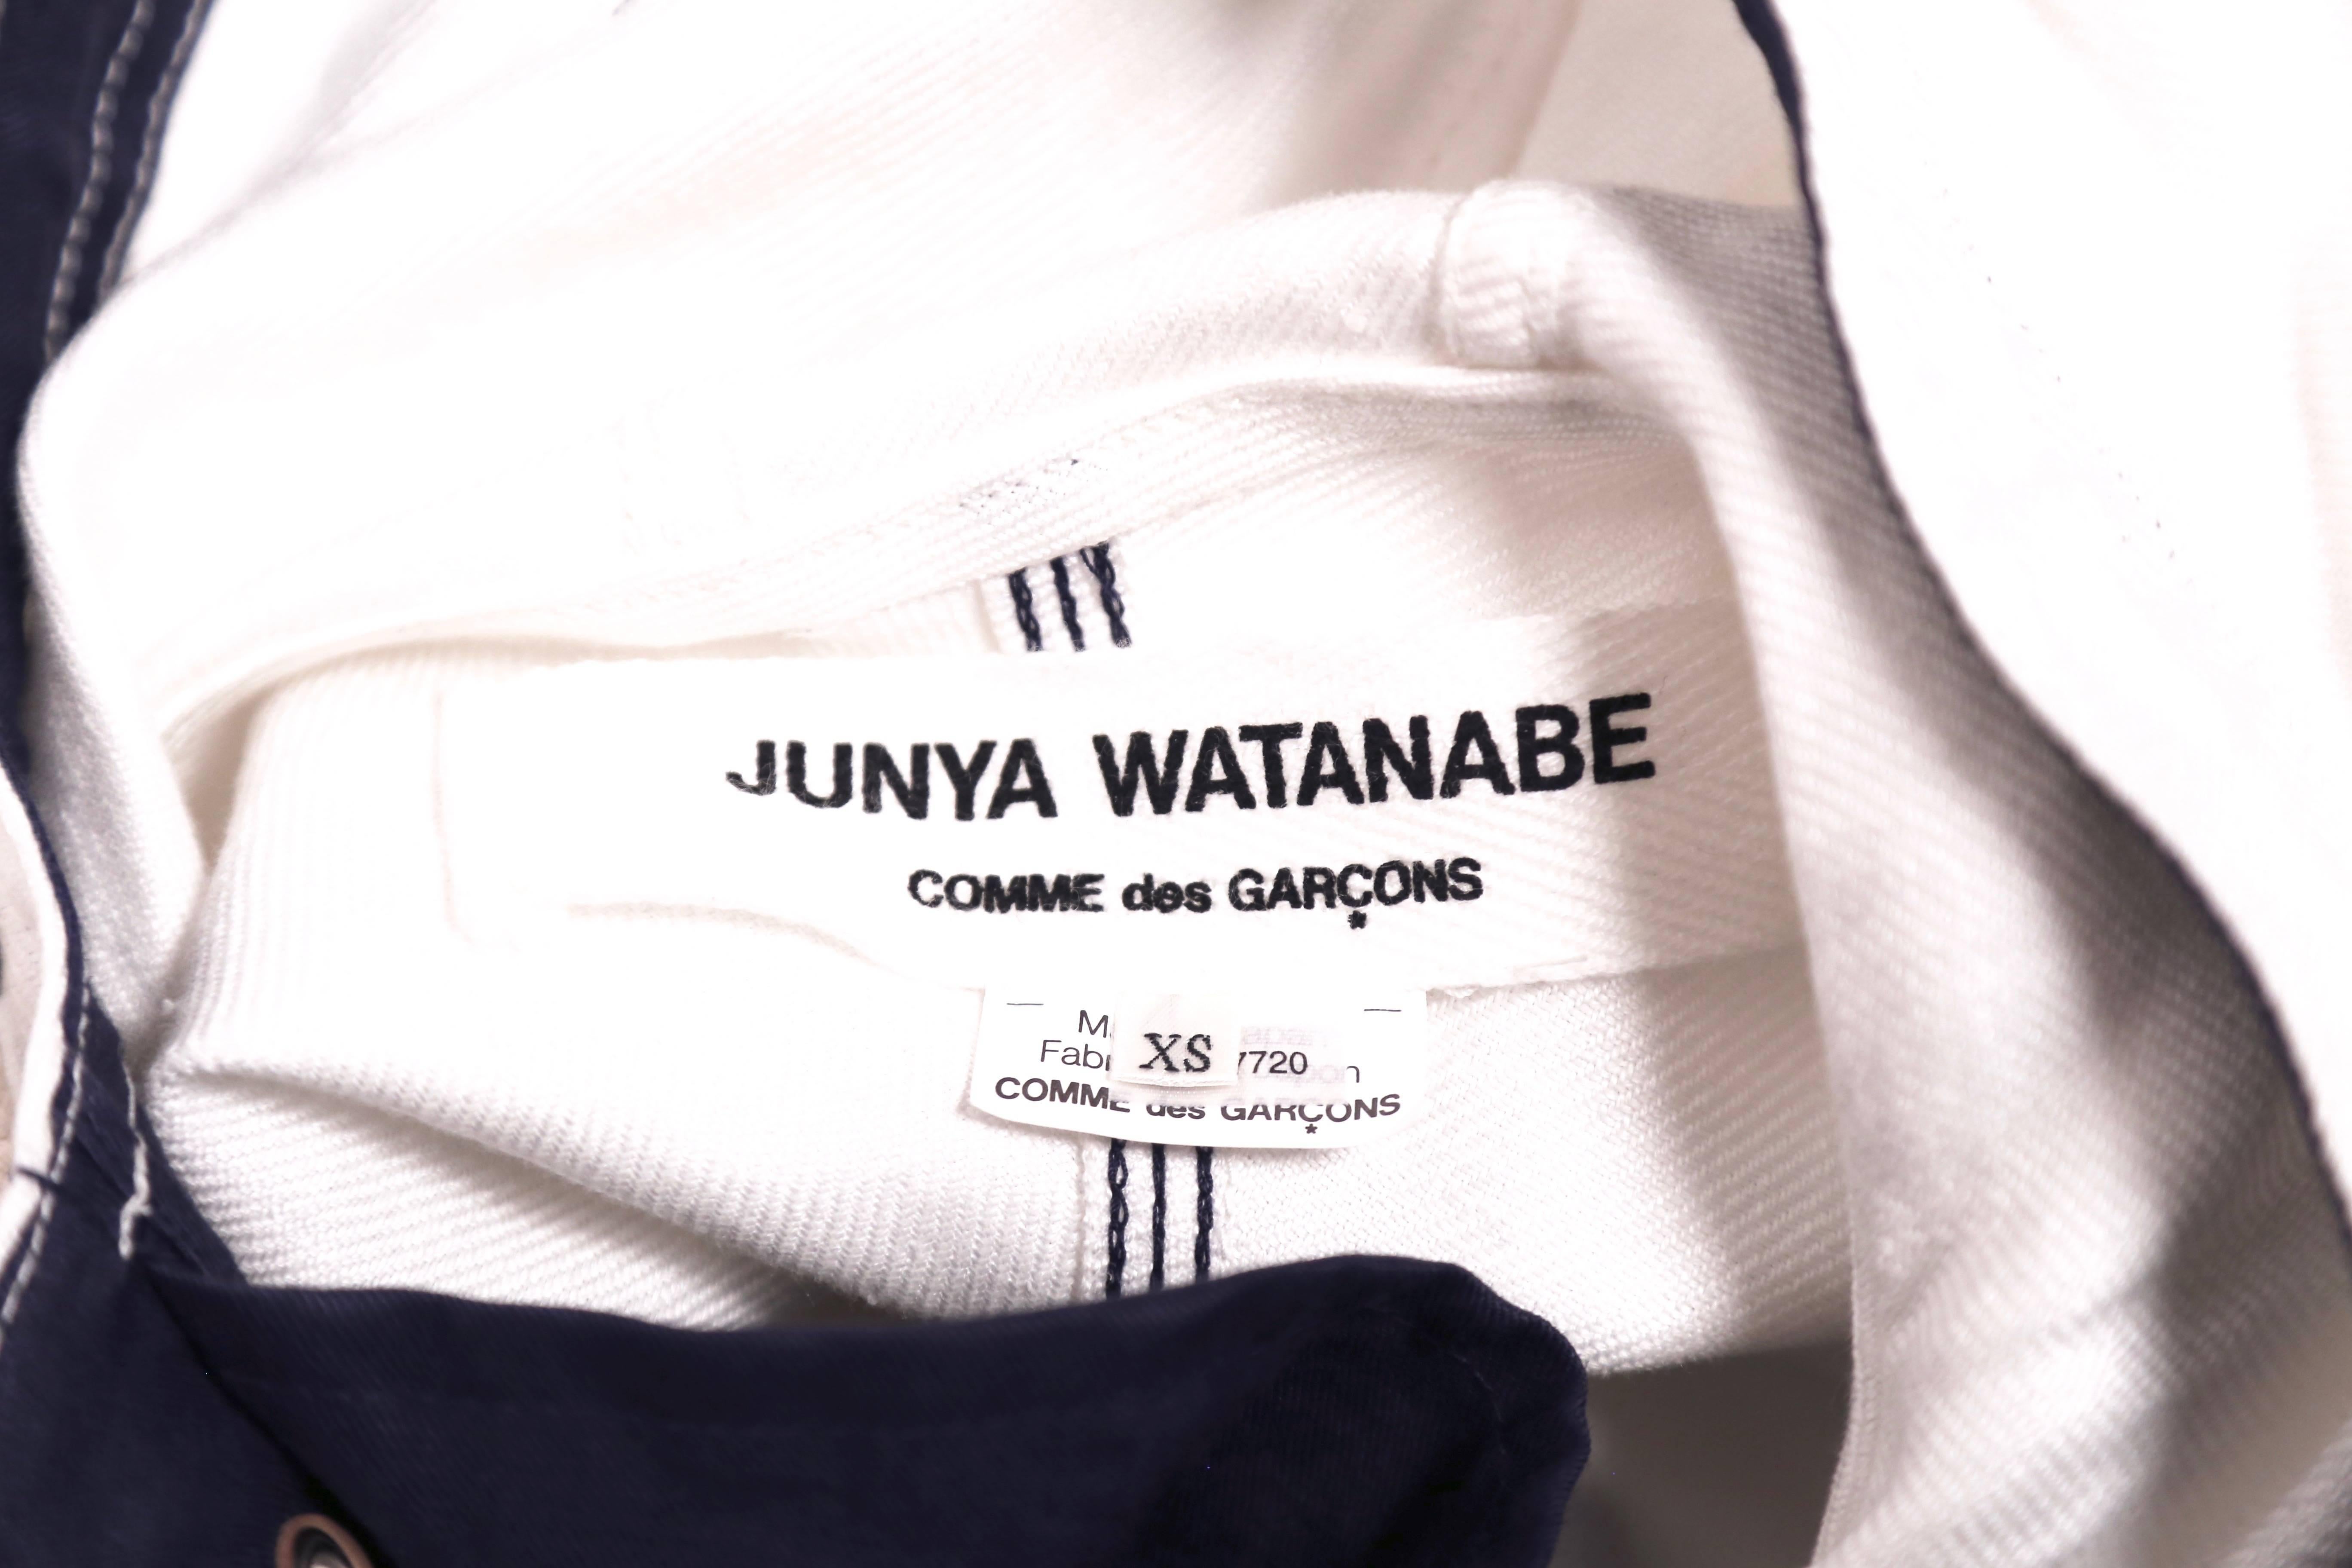 Women's or Men's 2011 JUNYA WATANABE COMME DES GARCONS runway sailor suit For Sale